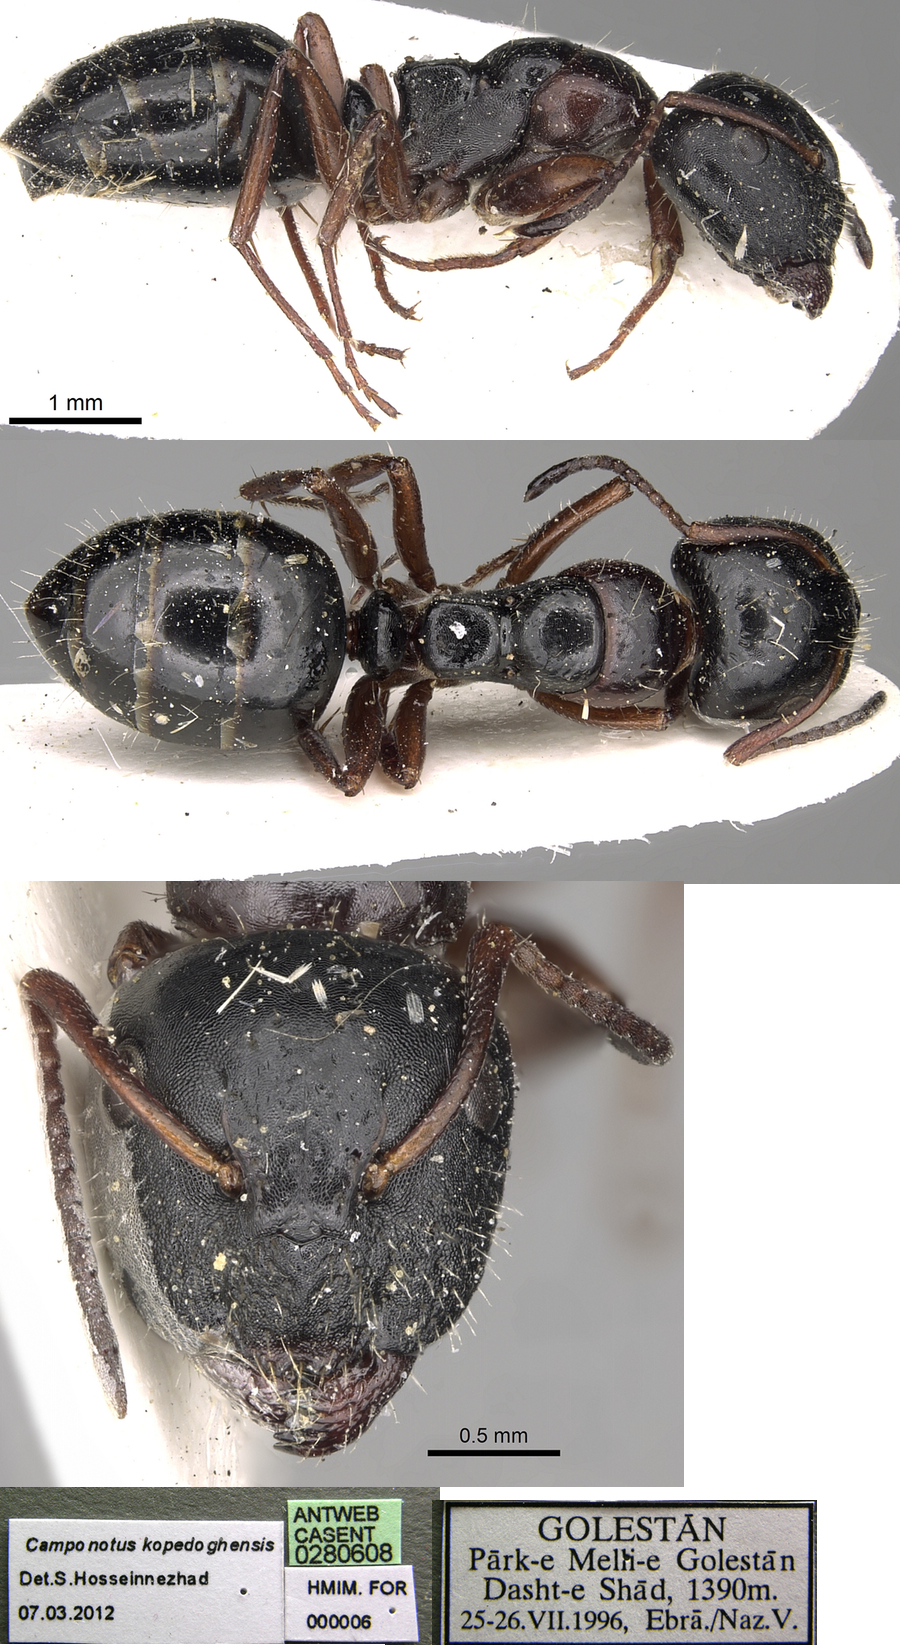 Camponotus kopatdaghensis major